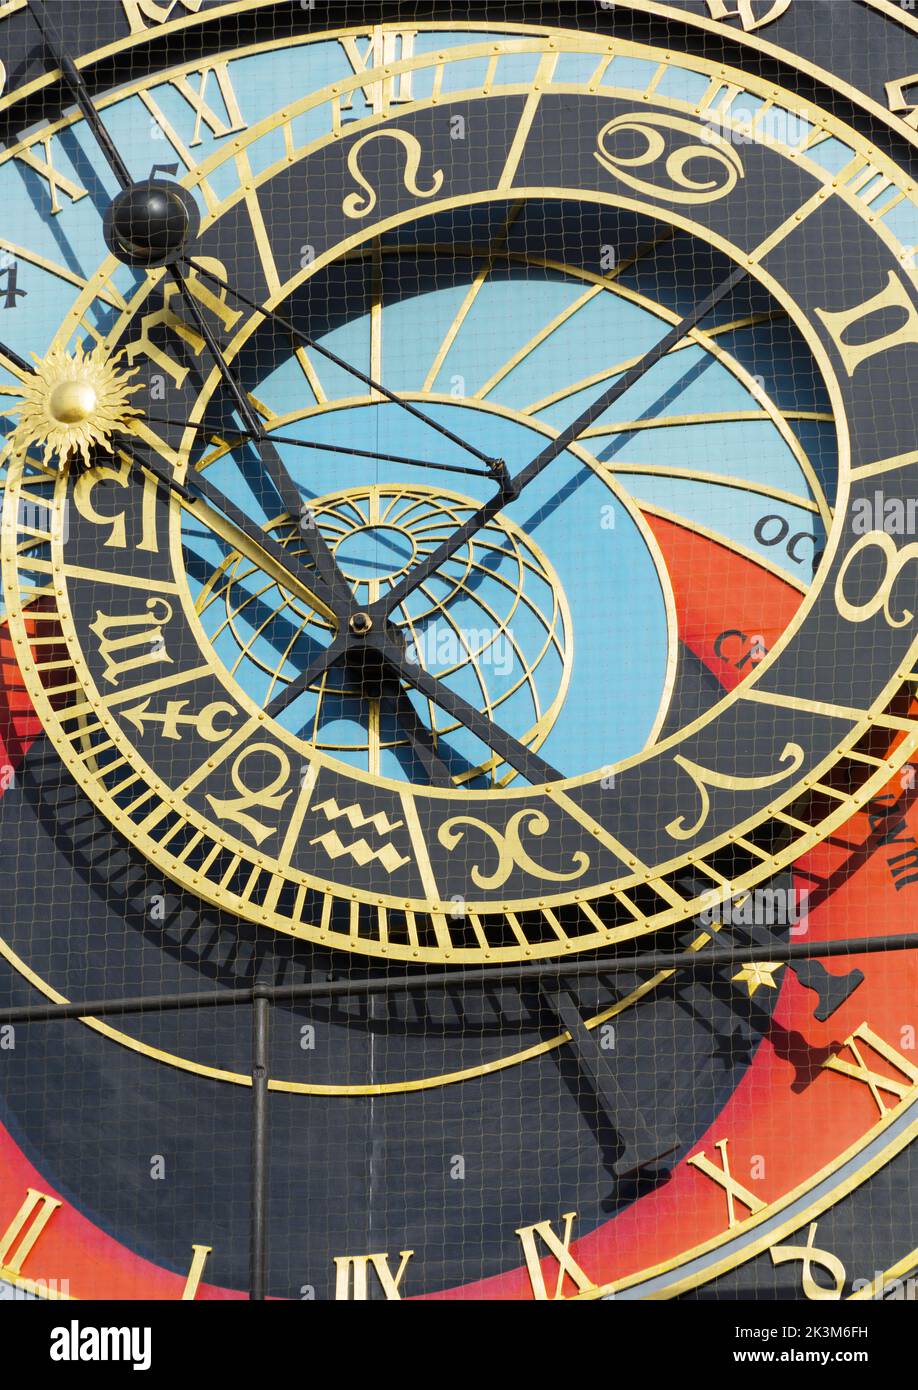 Serie fotografica Praga: Dettaglio dell'orologio astronomico di Praga, formato ritratto Foto Stock